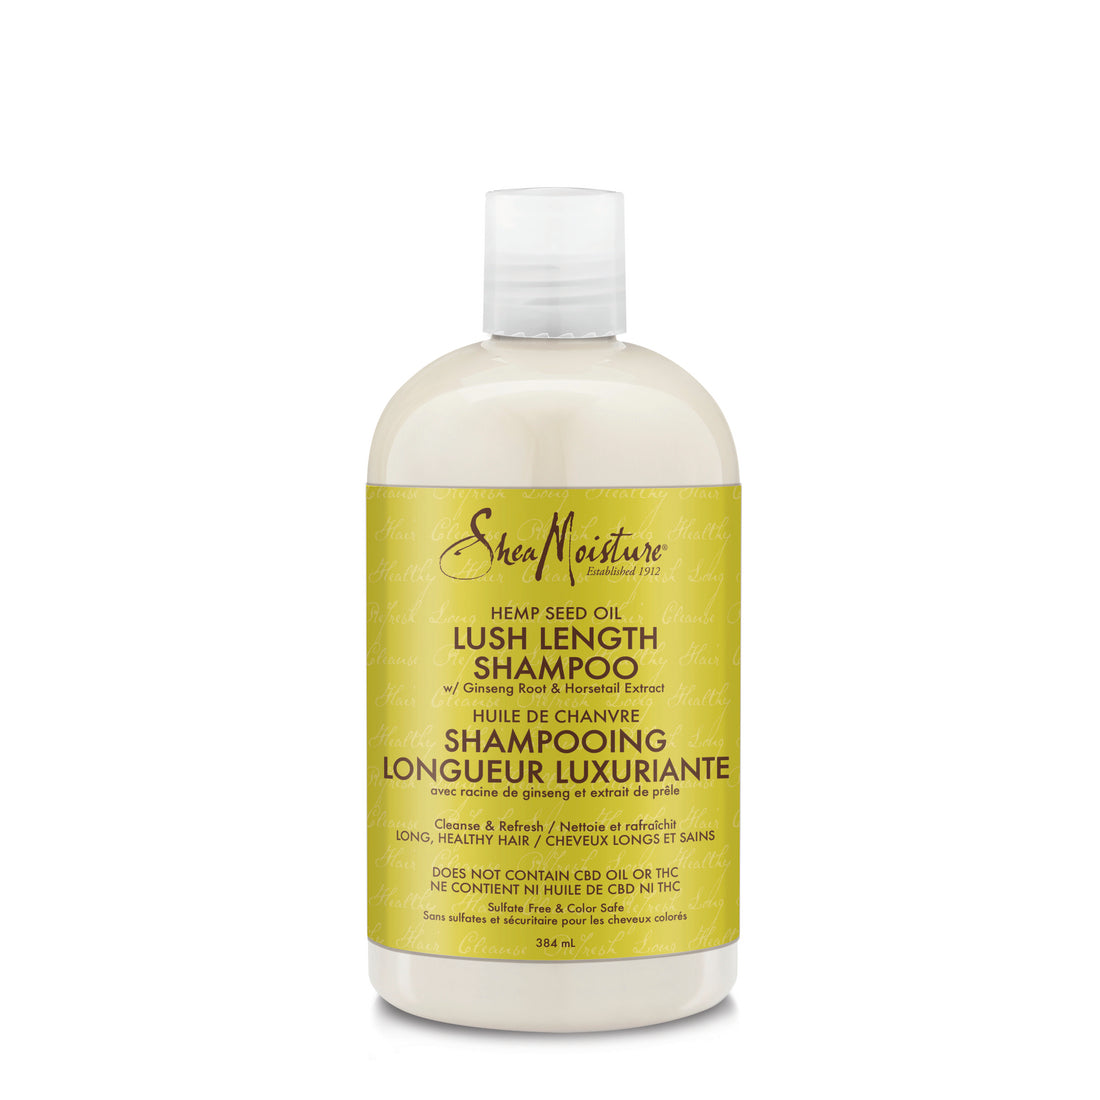 SheaMoisture Shampoing à l'huile de graines de cannabis sativa (chanvre) longueur luxuriante 384 ml